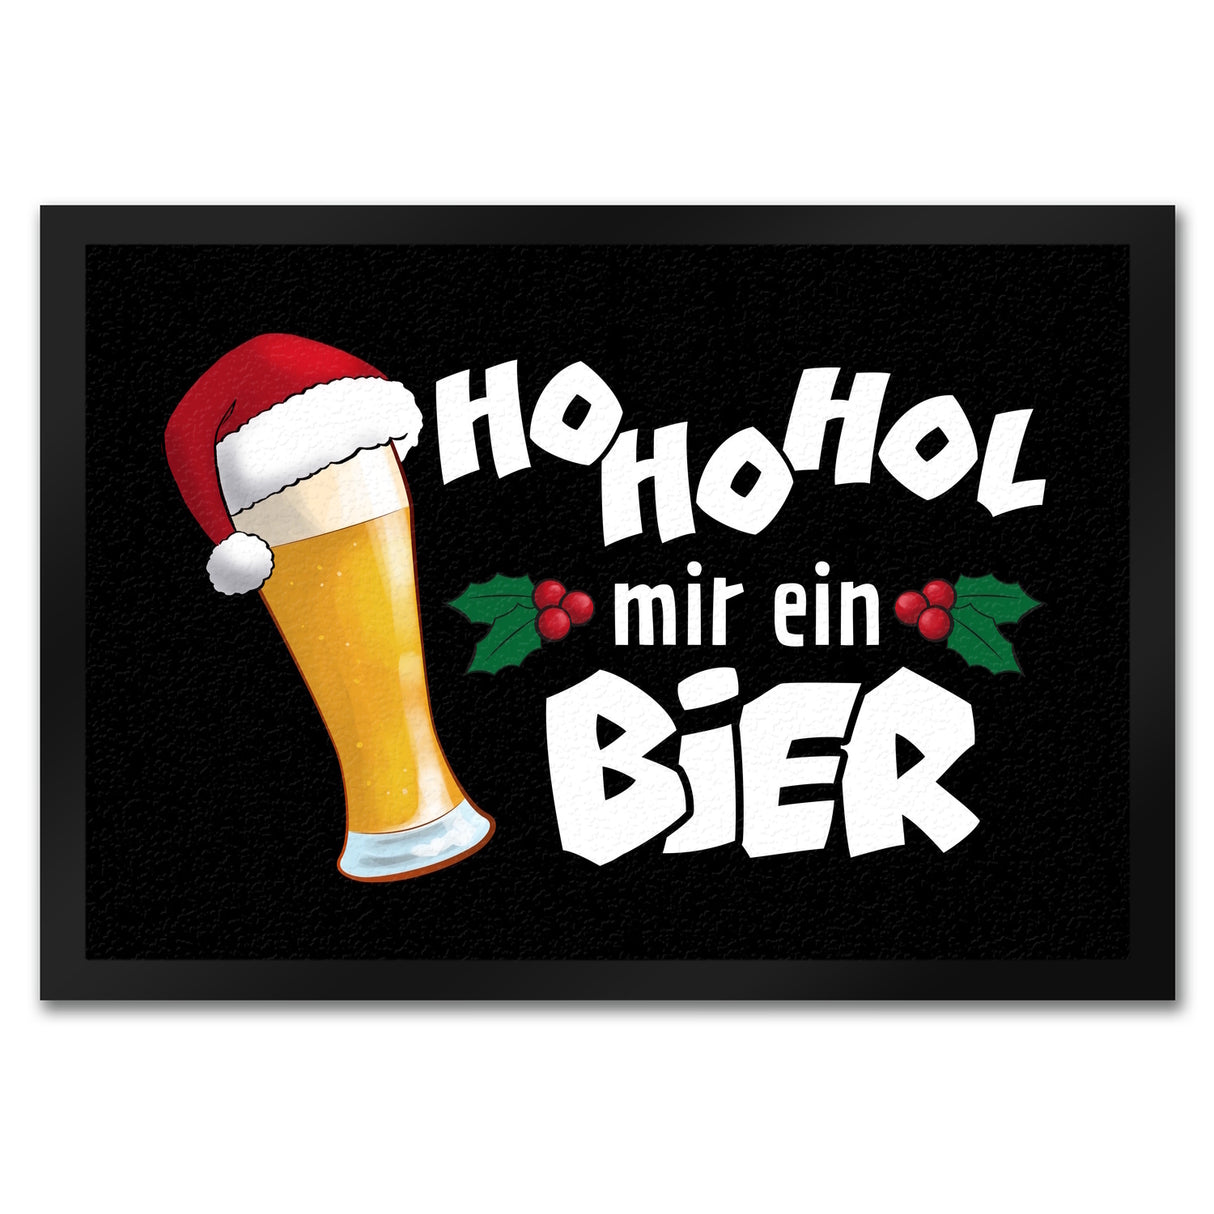 HoHoHol mir ein Bier: Lustige Fußmatte mit Weihnachtsmütze als Geschenk  kaufen! –